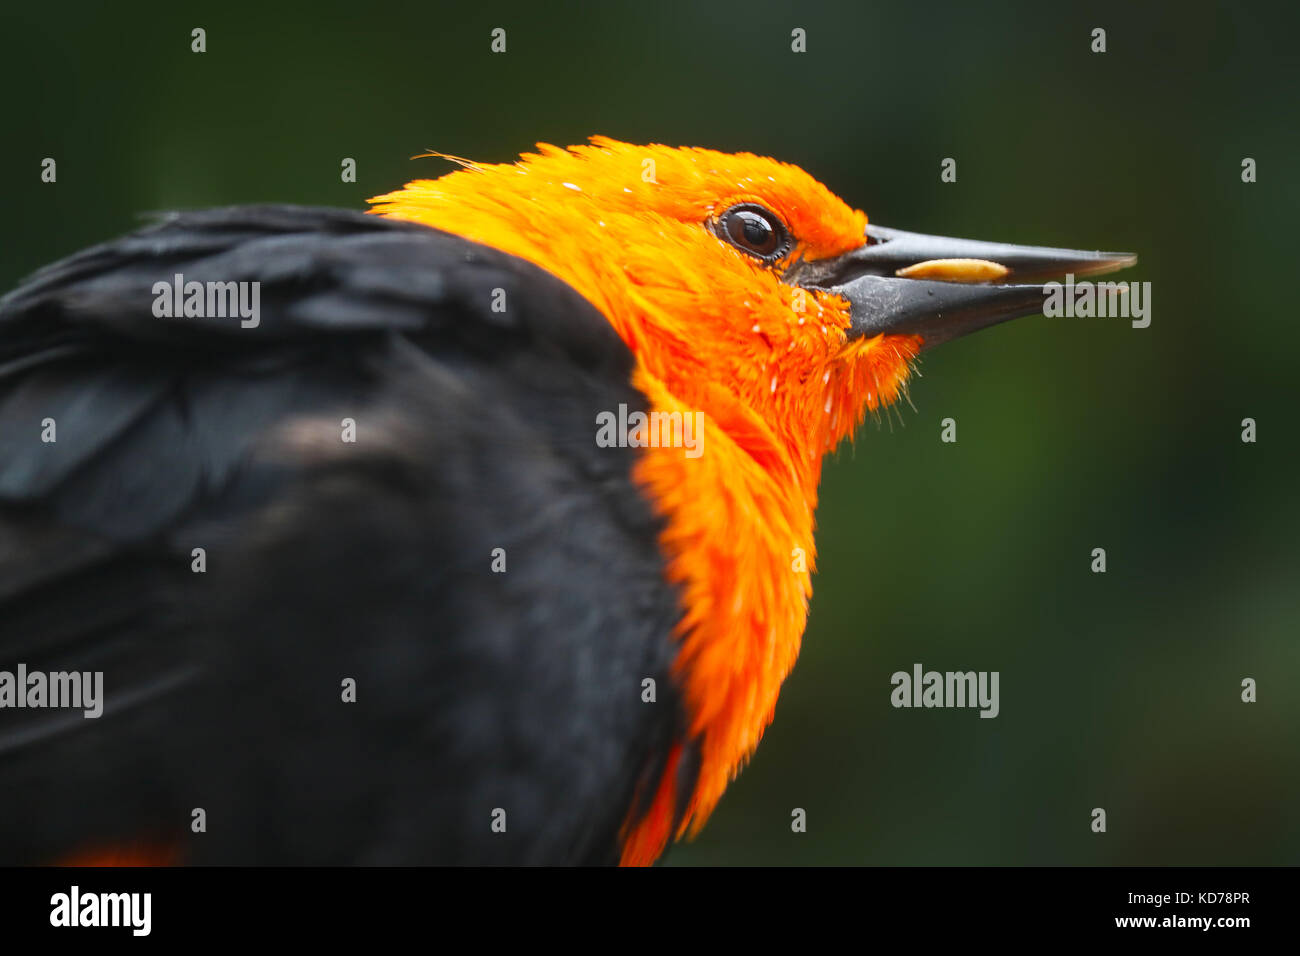 Luminose di colore arancio testa di scarlet-guidato blackbird bird mangiando un seme di mais granella Foto Stock